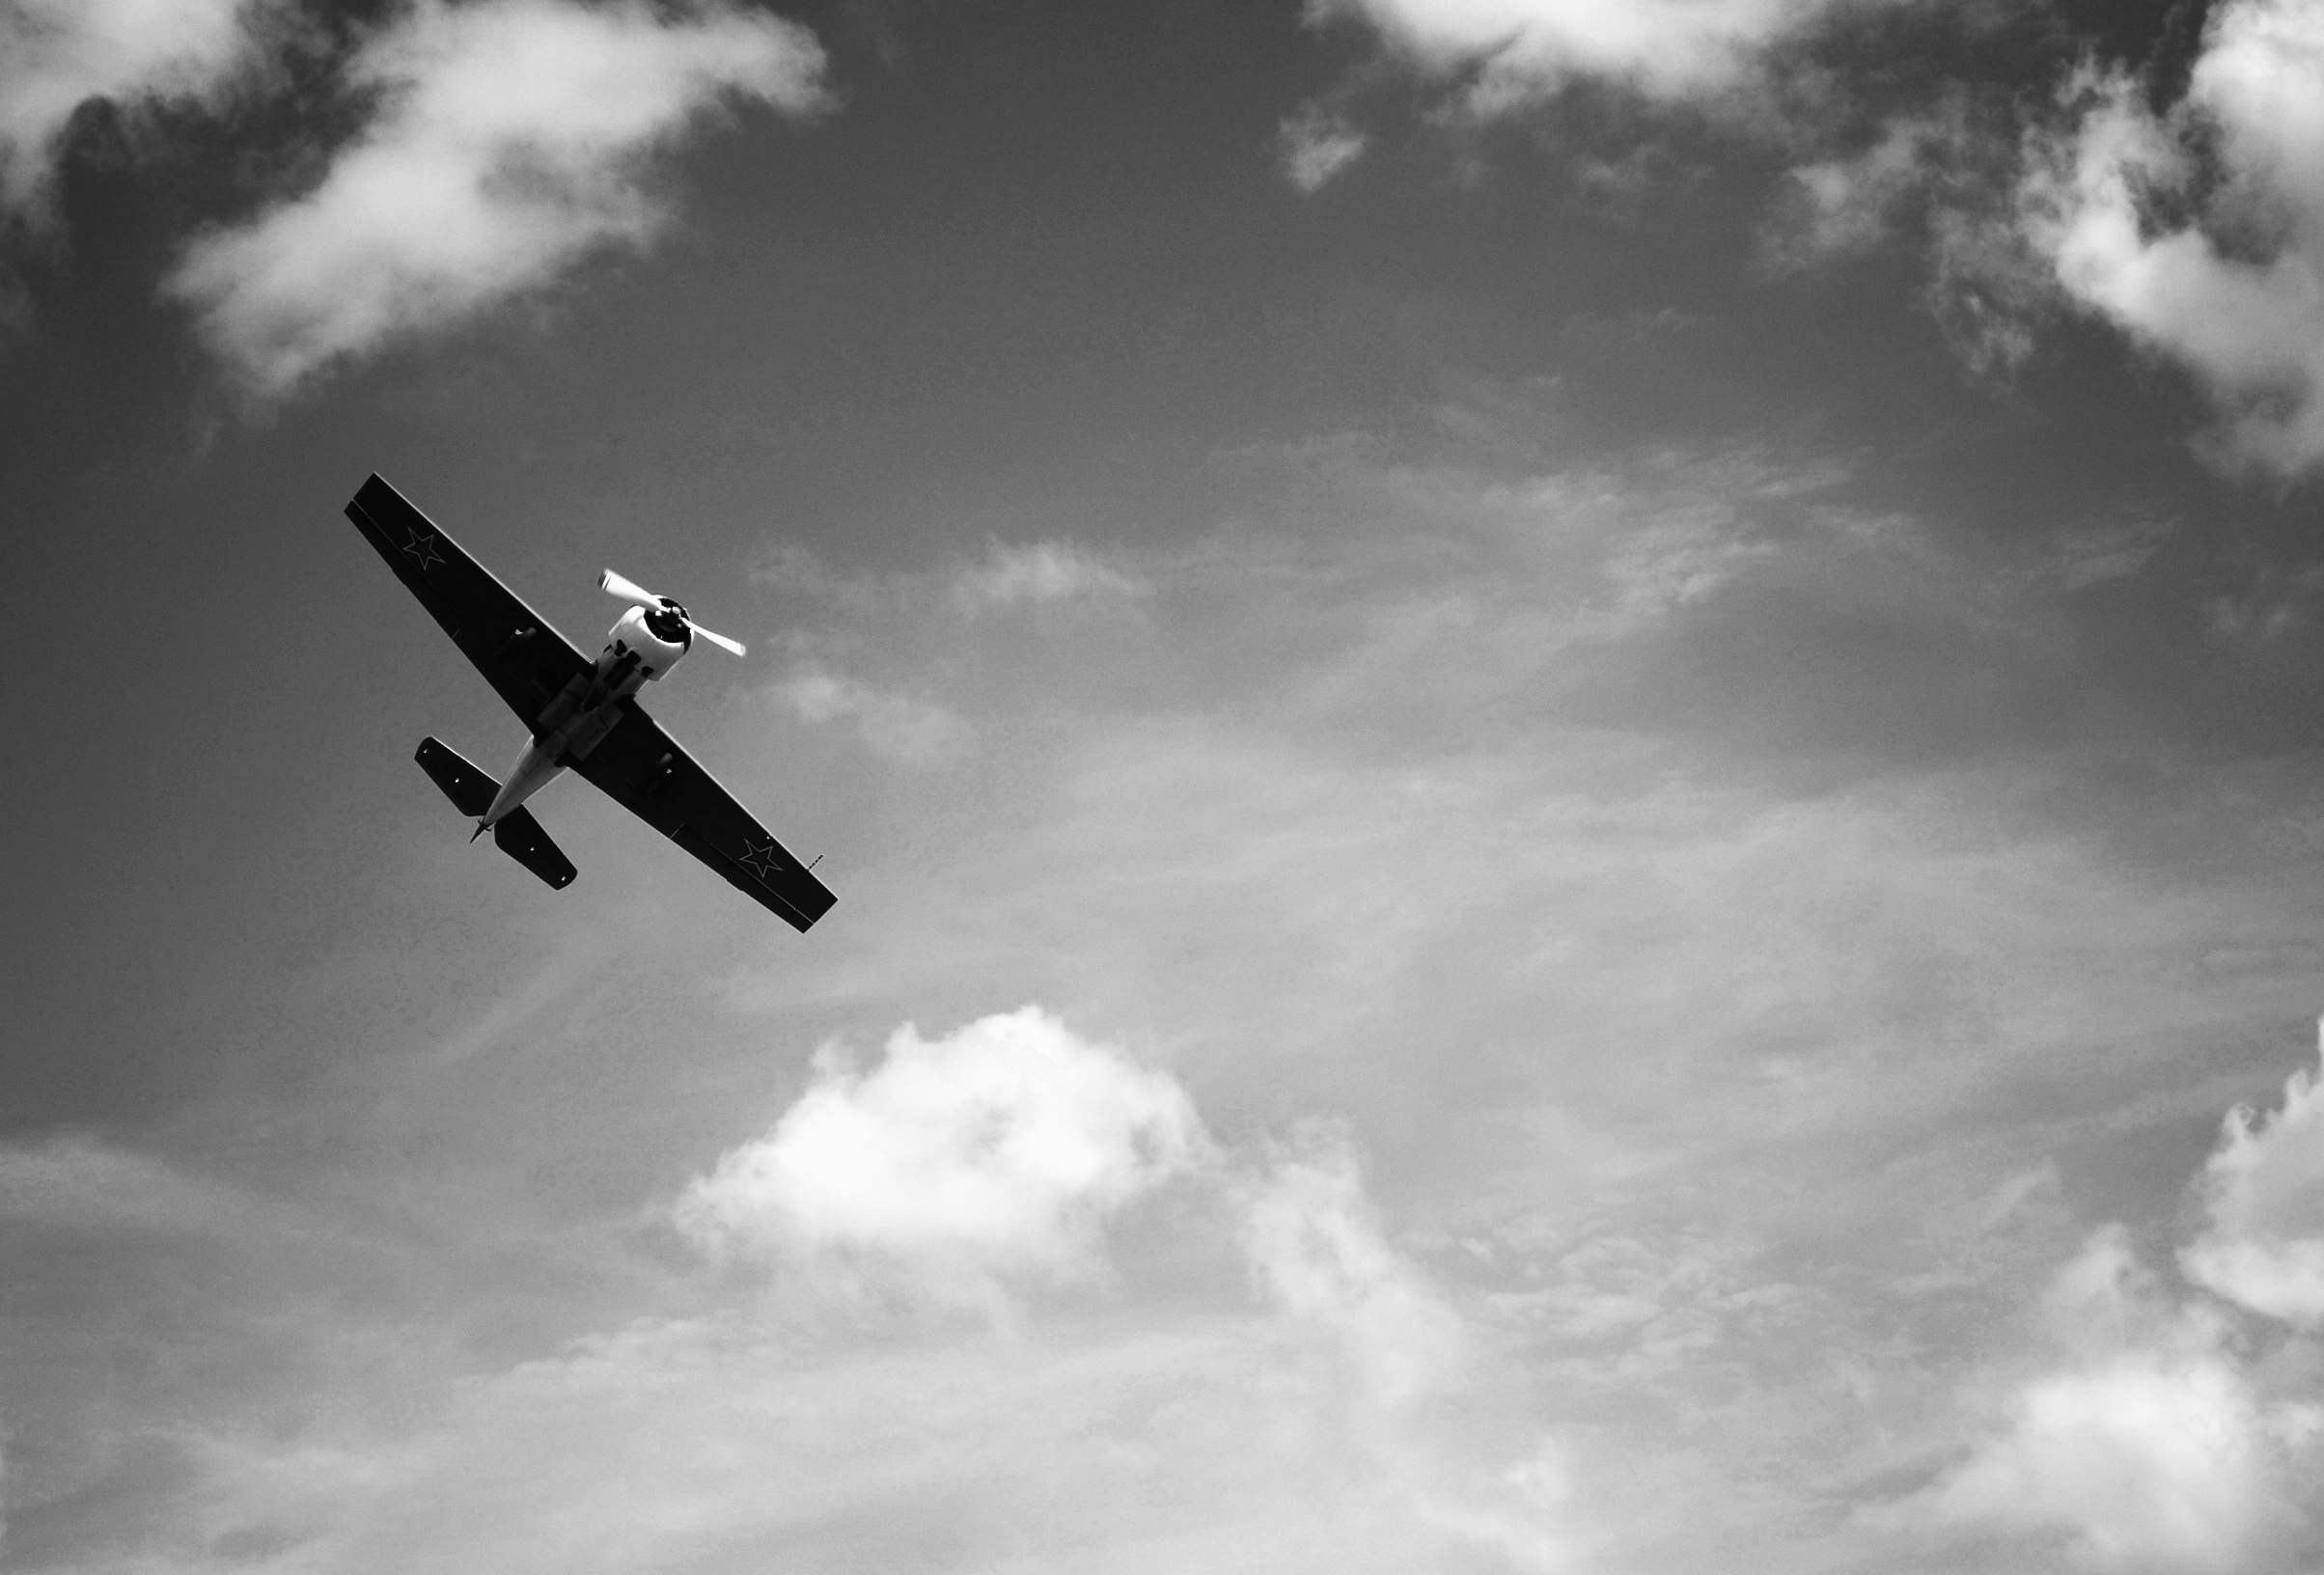 单色图像中天空中一架孤独的飞机